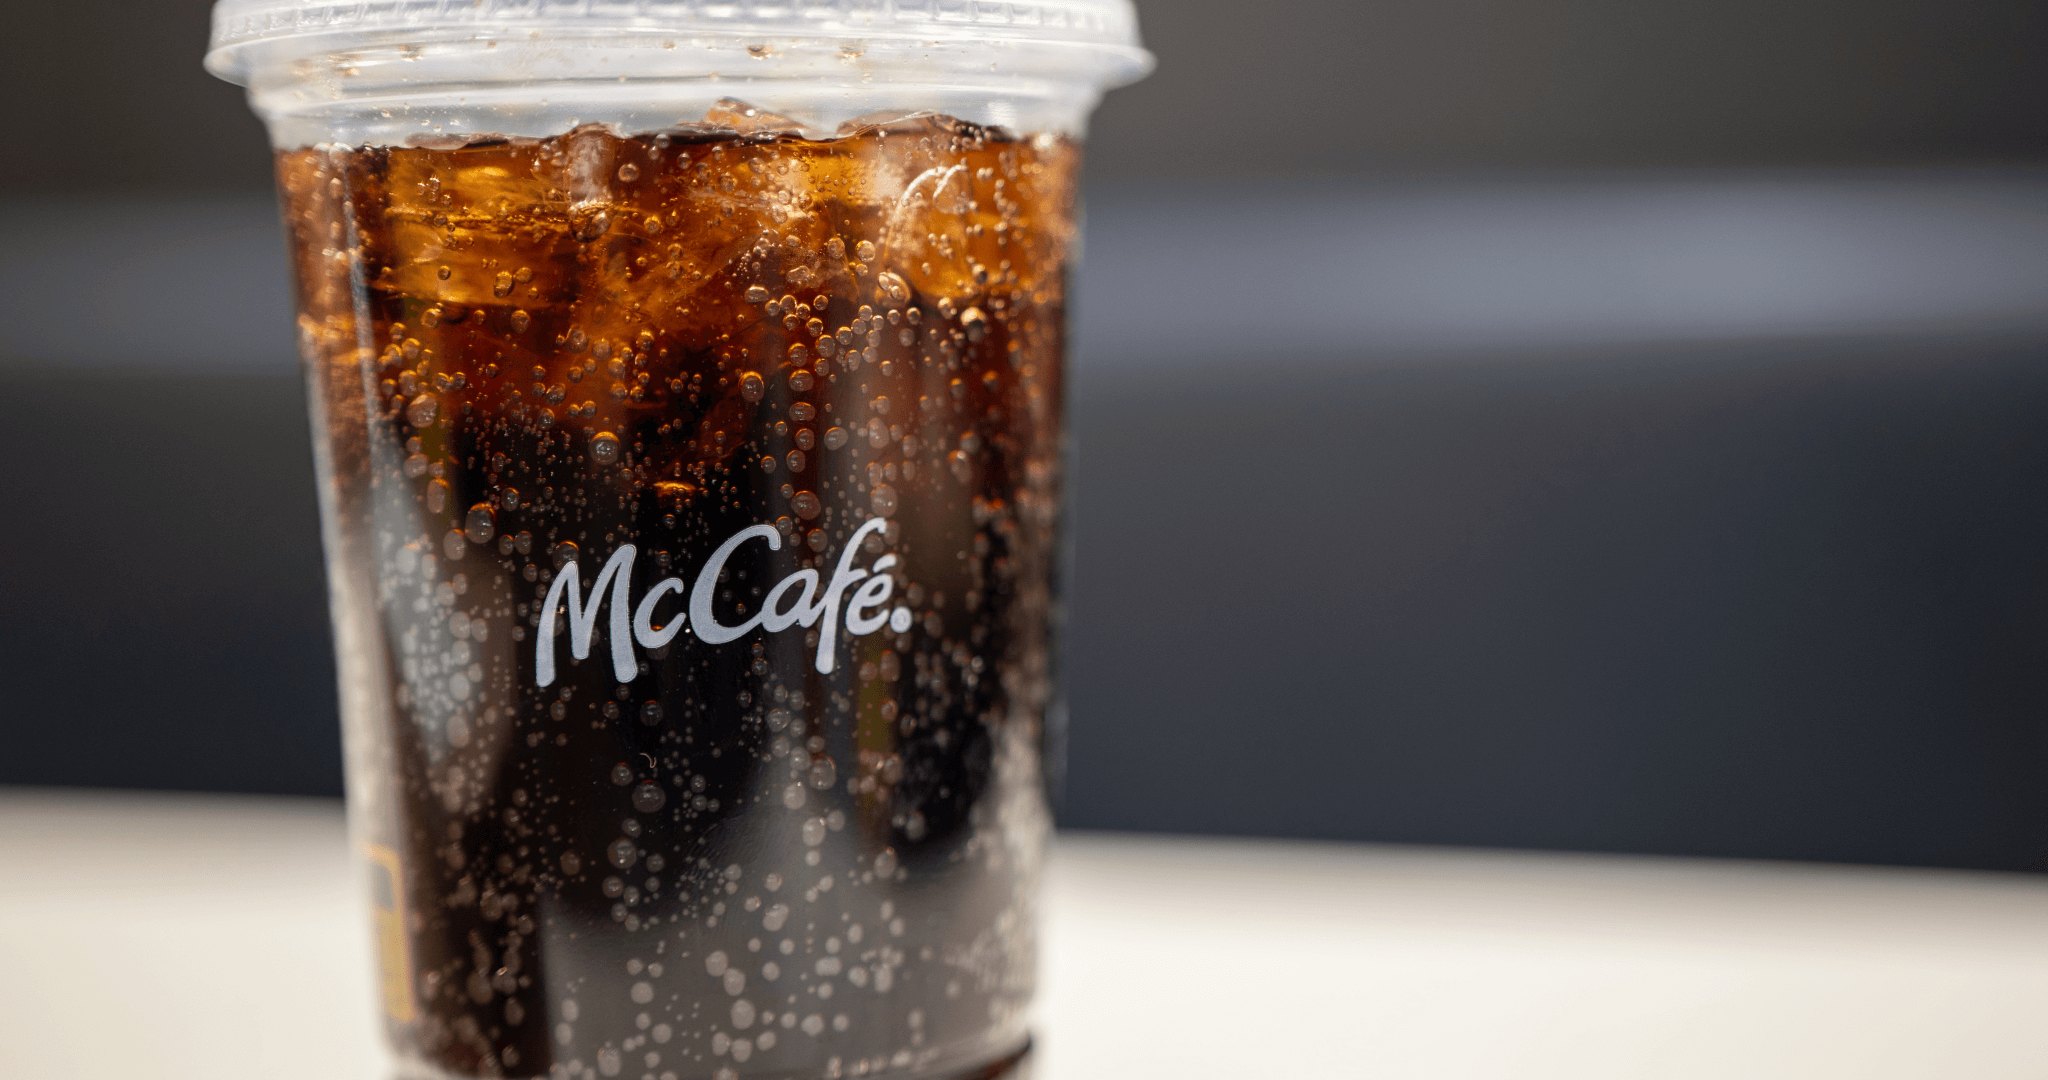 Coca Cola in McDonalds plastic cup